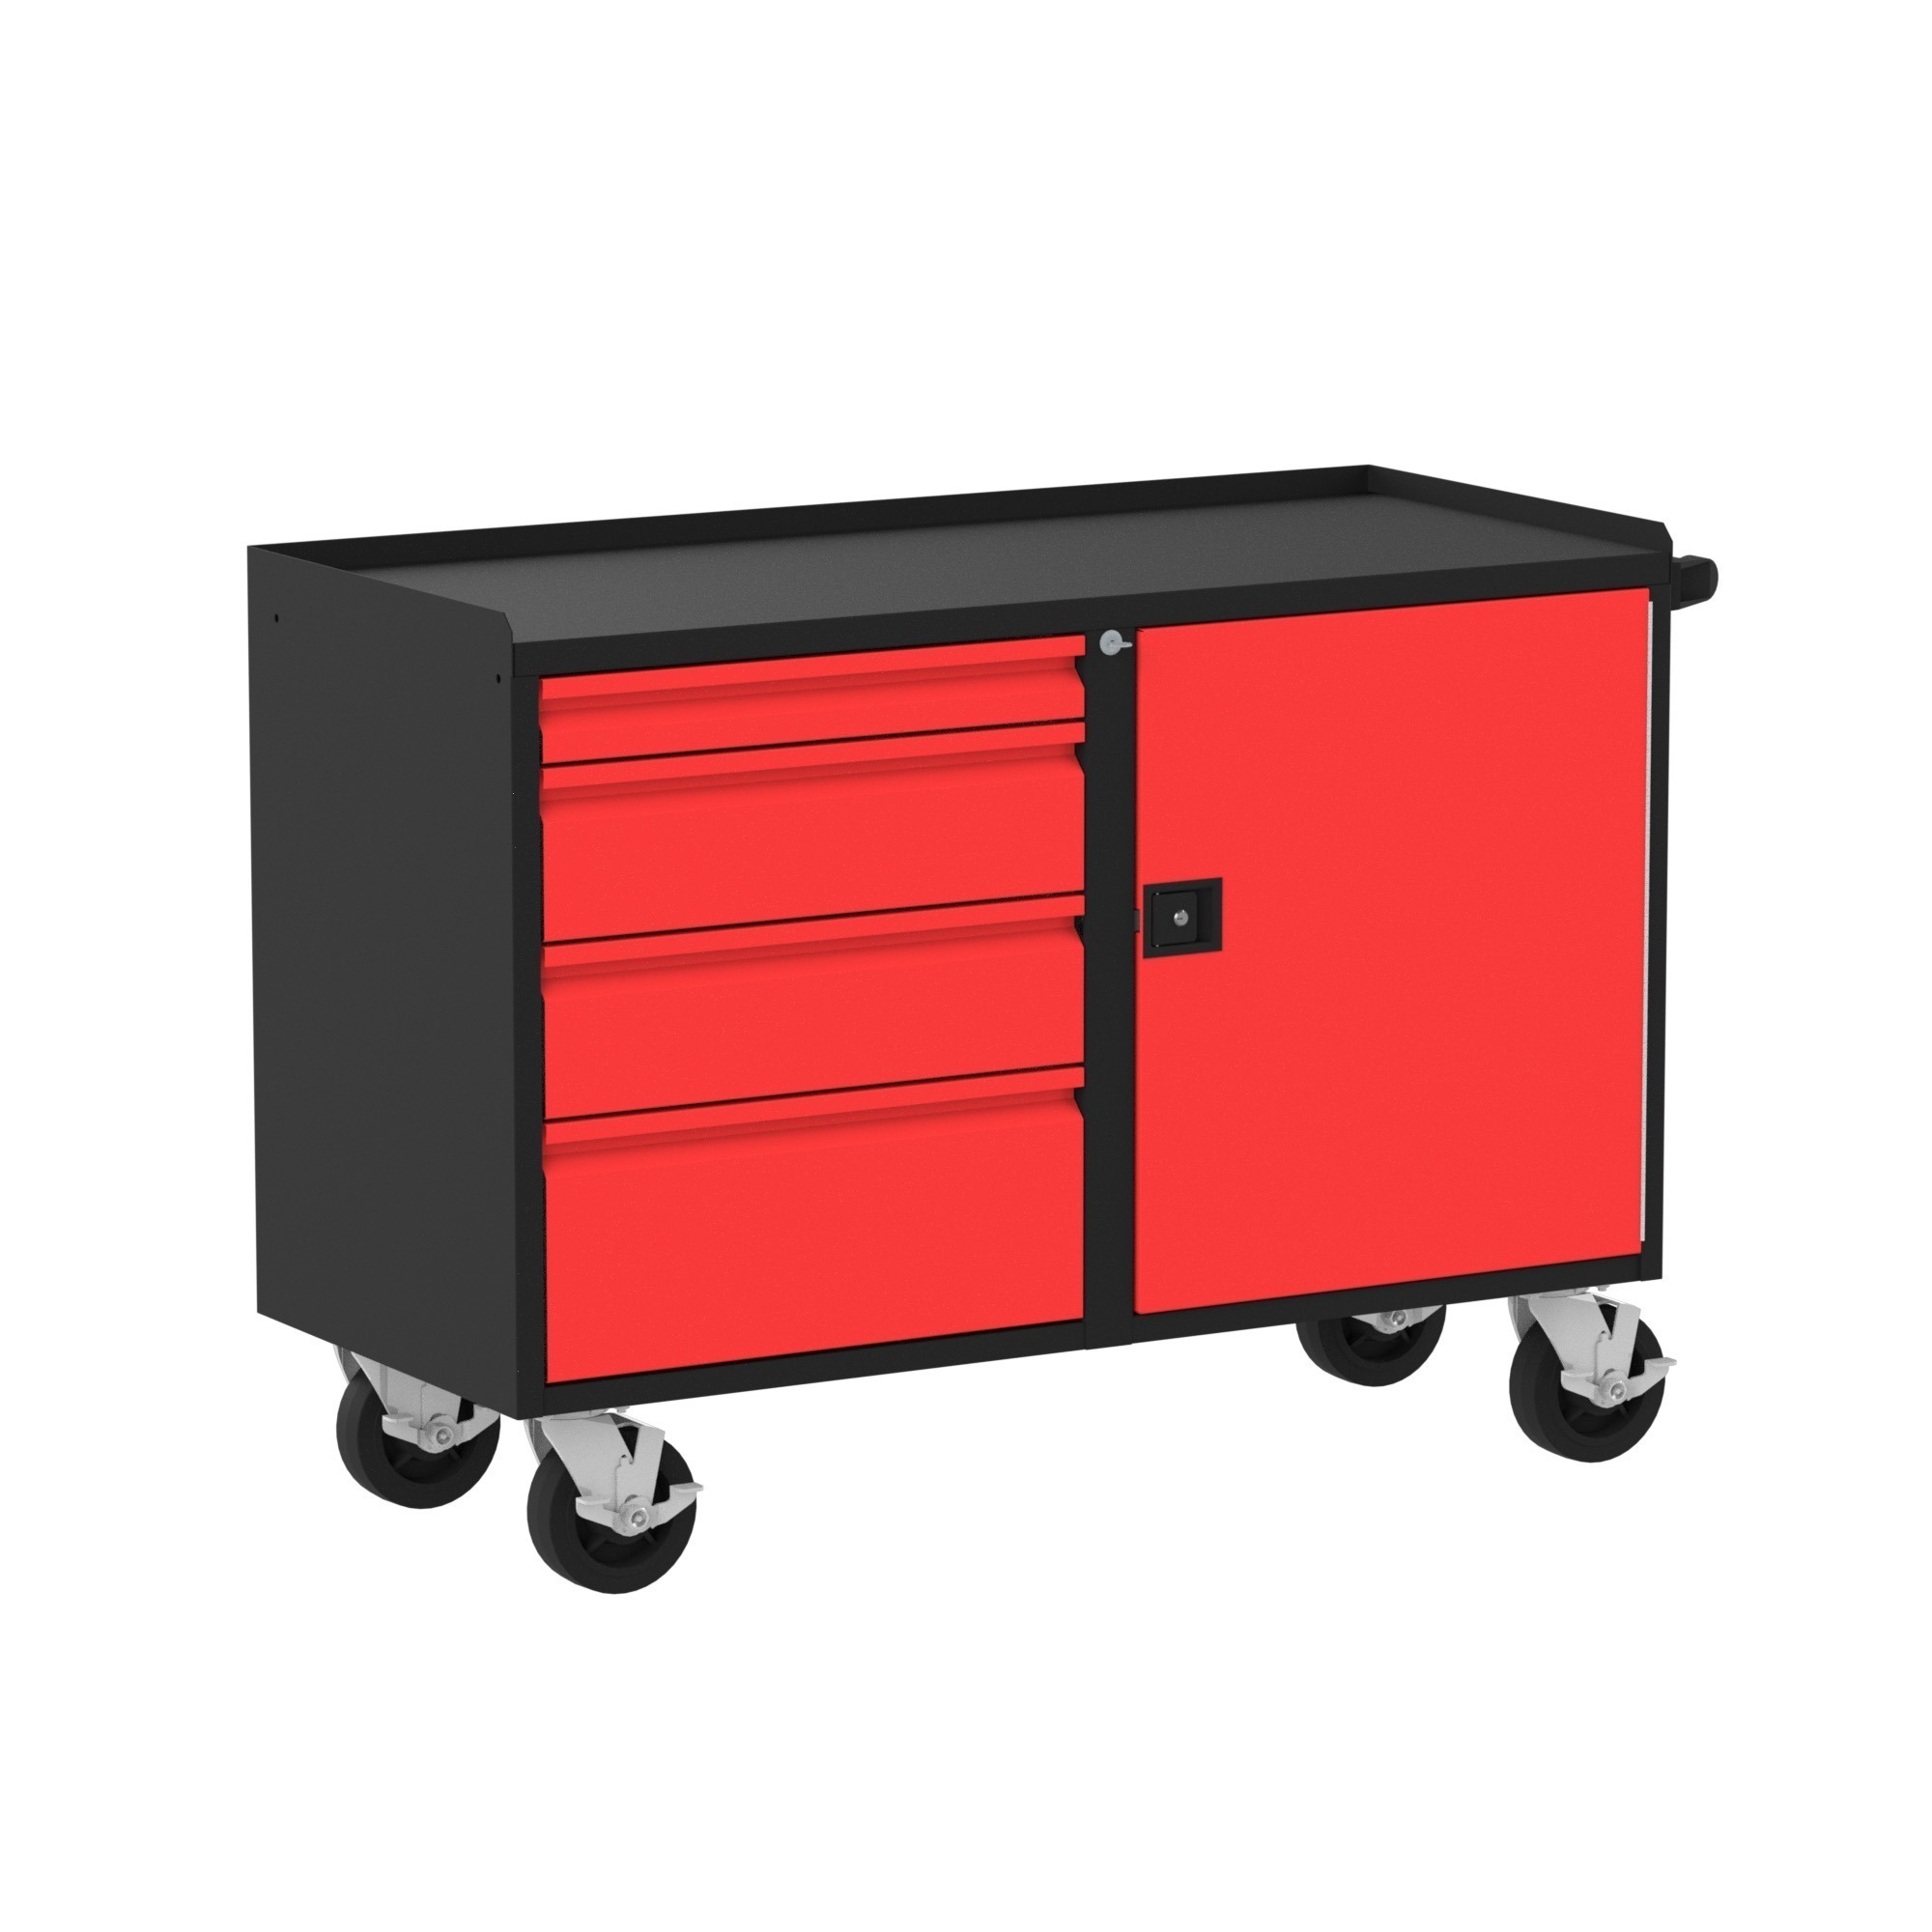 48" Deluxe Mobile Workbench, (4) Drawers (1) Door, Red/Black